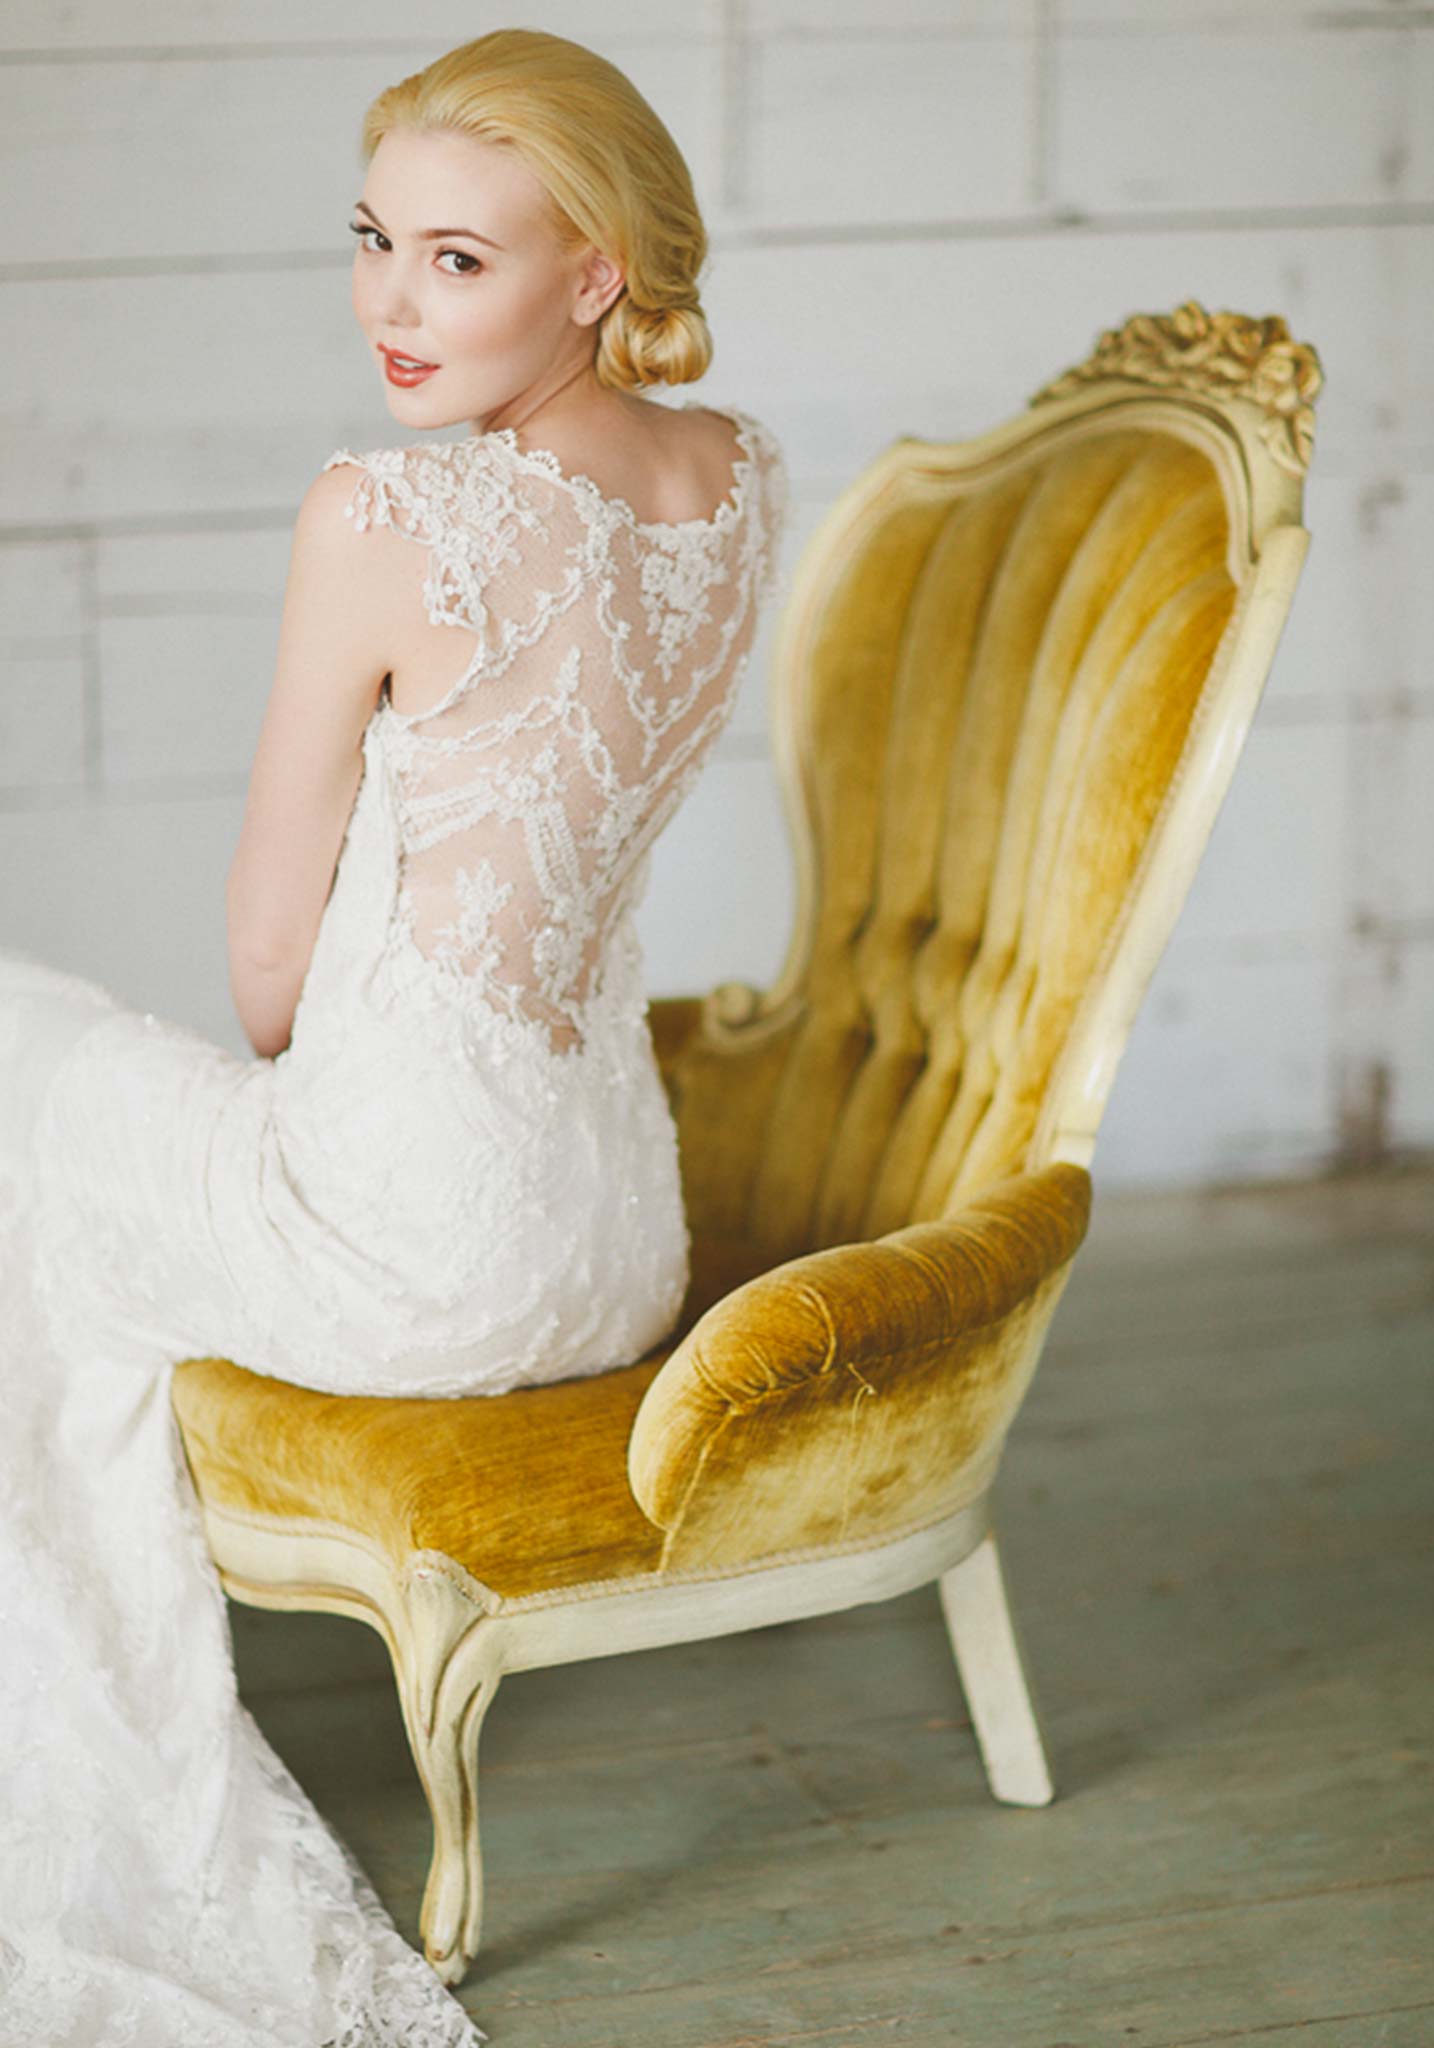 Chantilly Lace Wedding Dress  Ivory Cotton Lace Wedding Dress